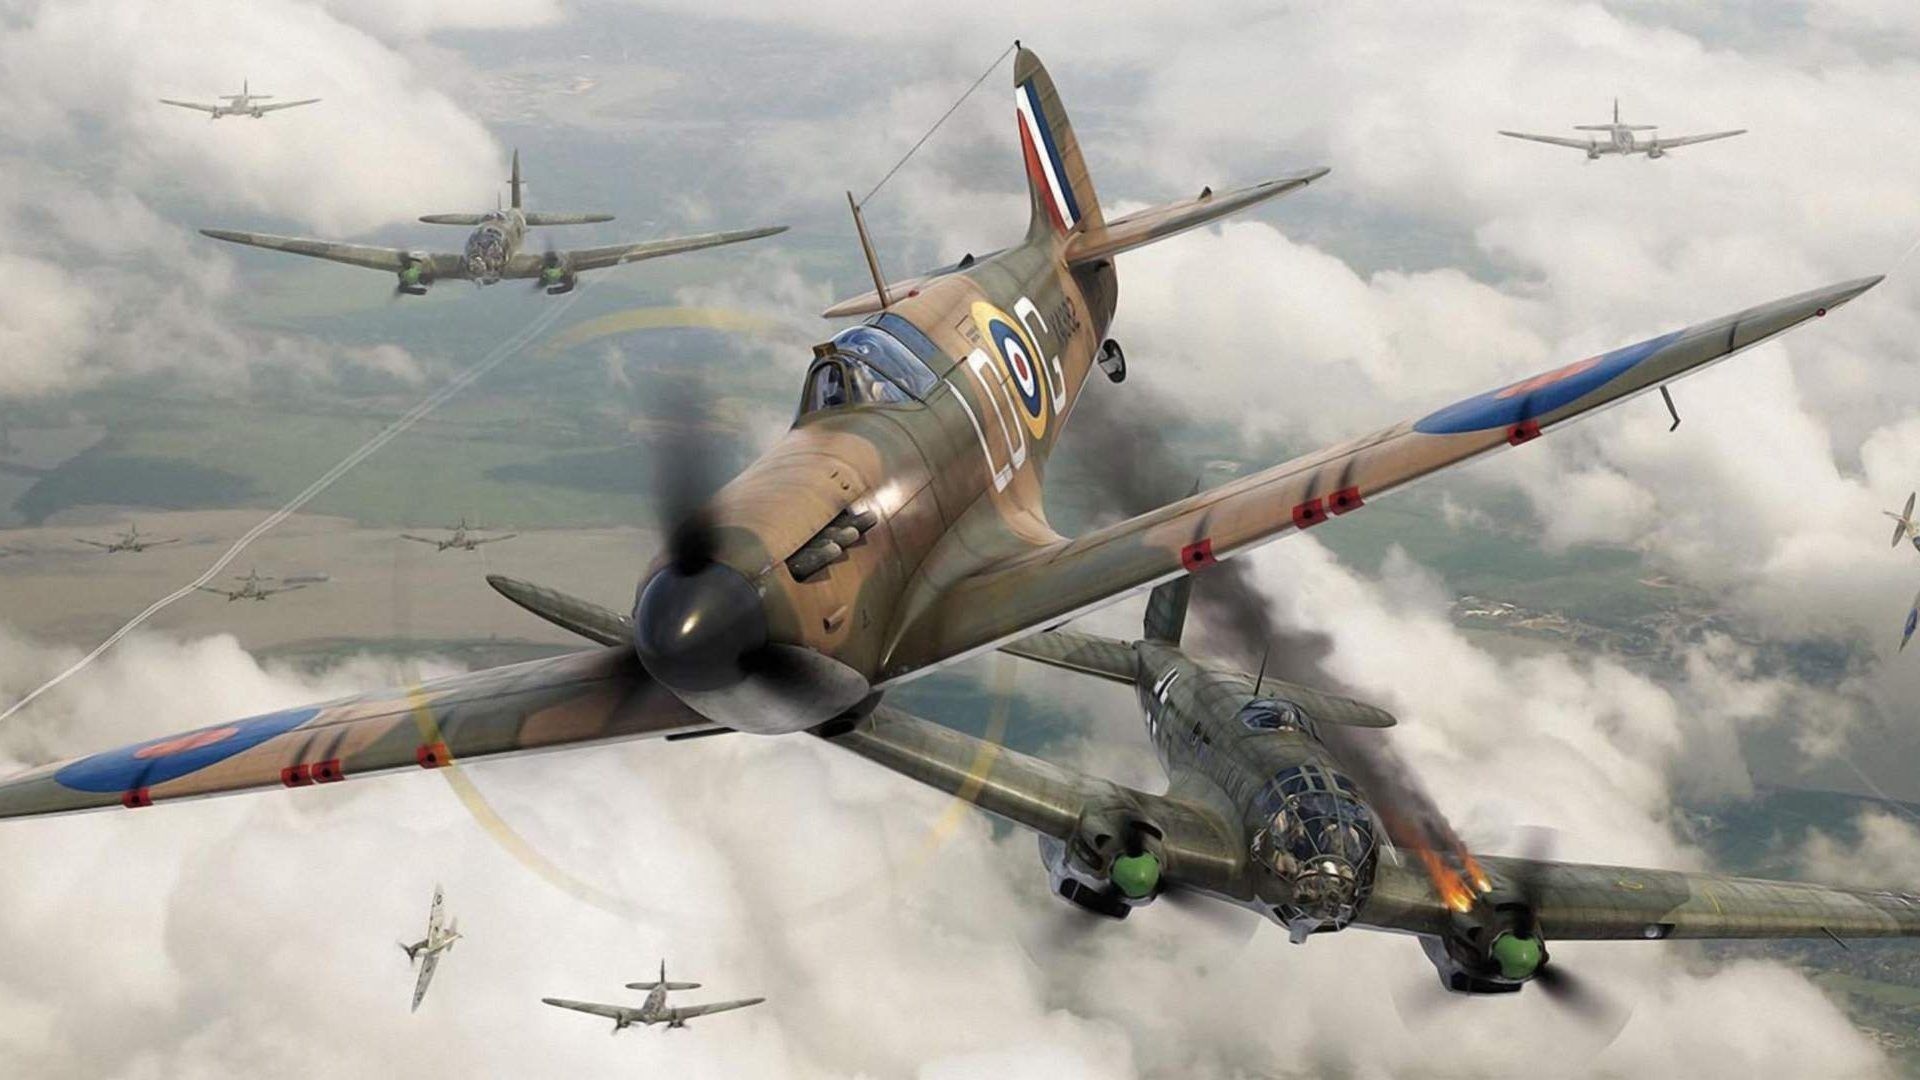 World War II planes wallpapers, Aviation history, Fighter aircraft, Warbird beauty, 1920x1080 Full HD Desktop